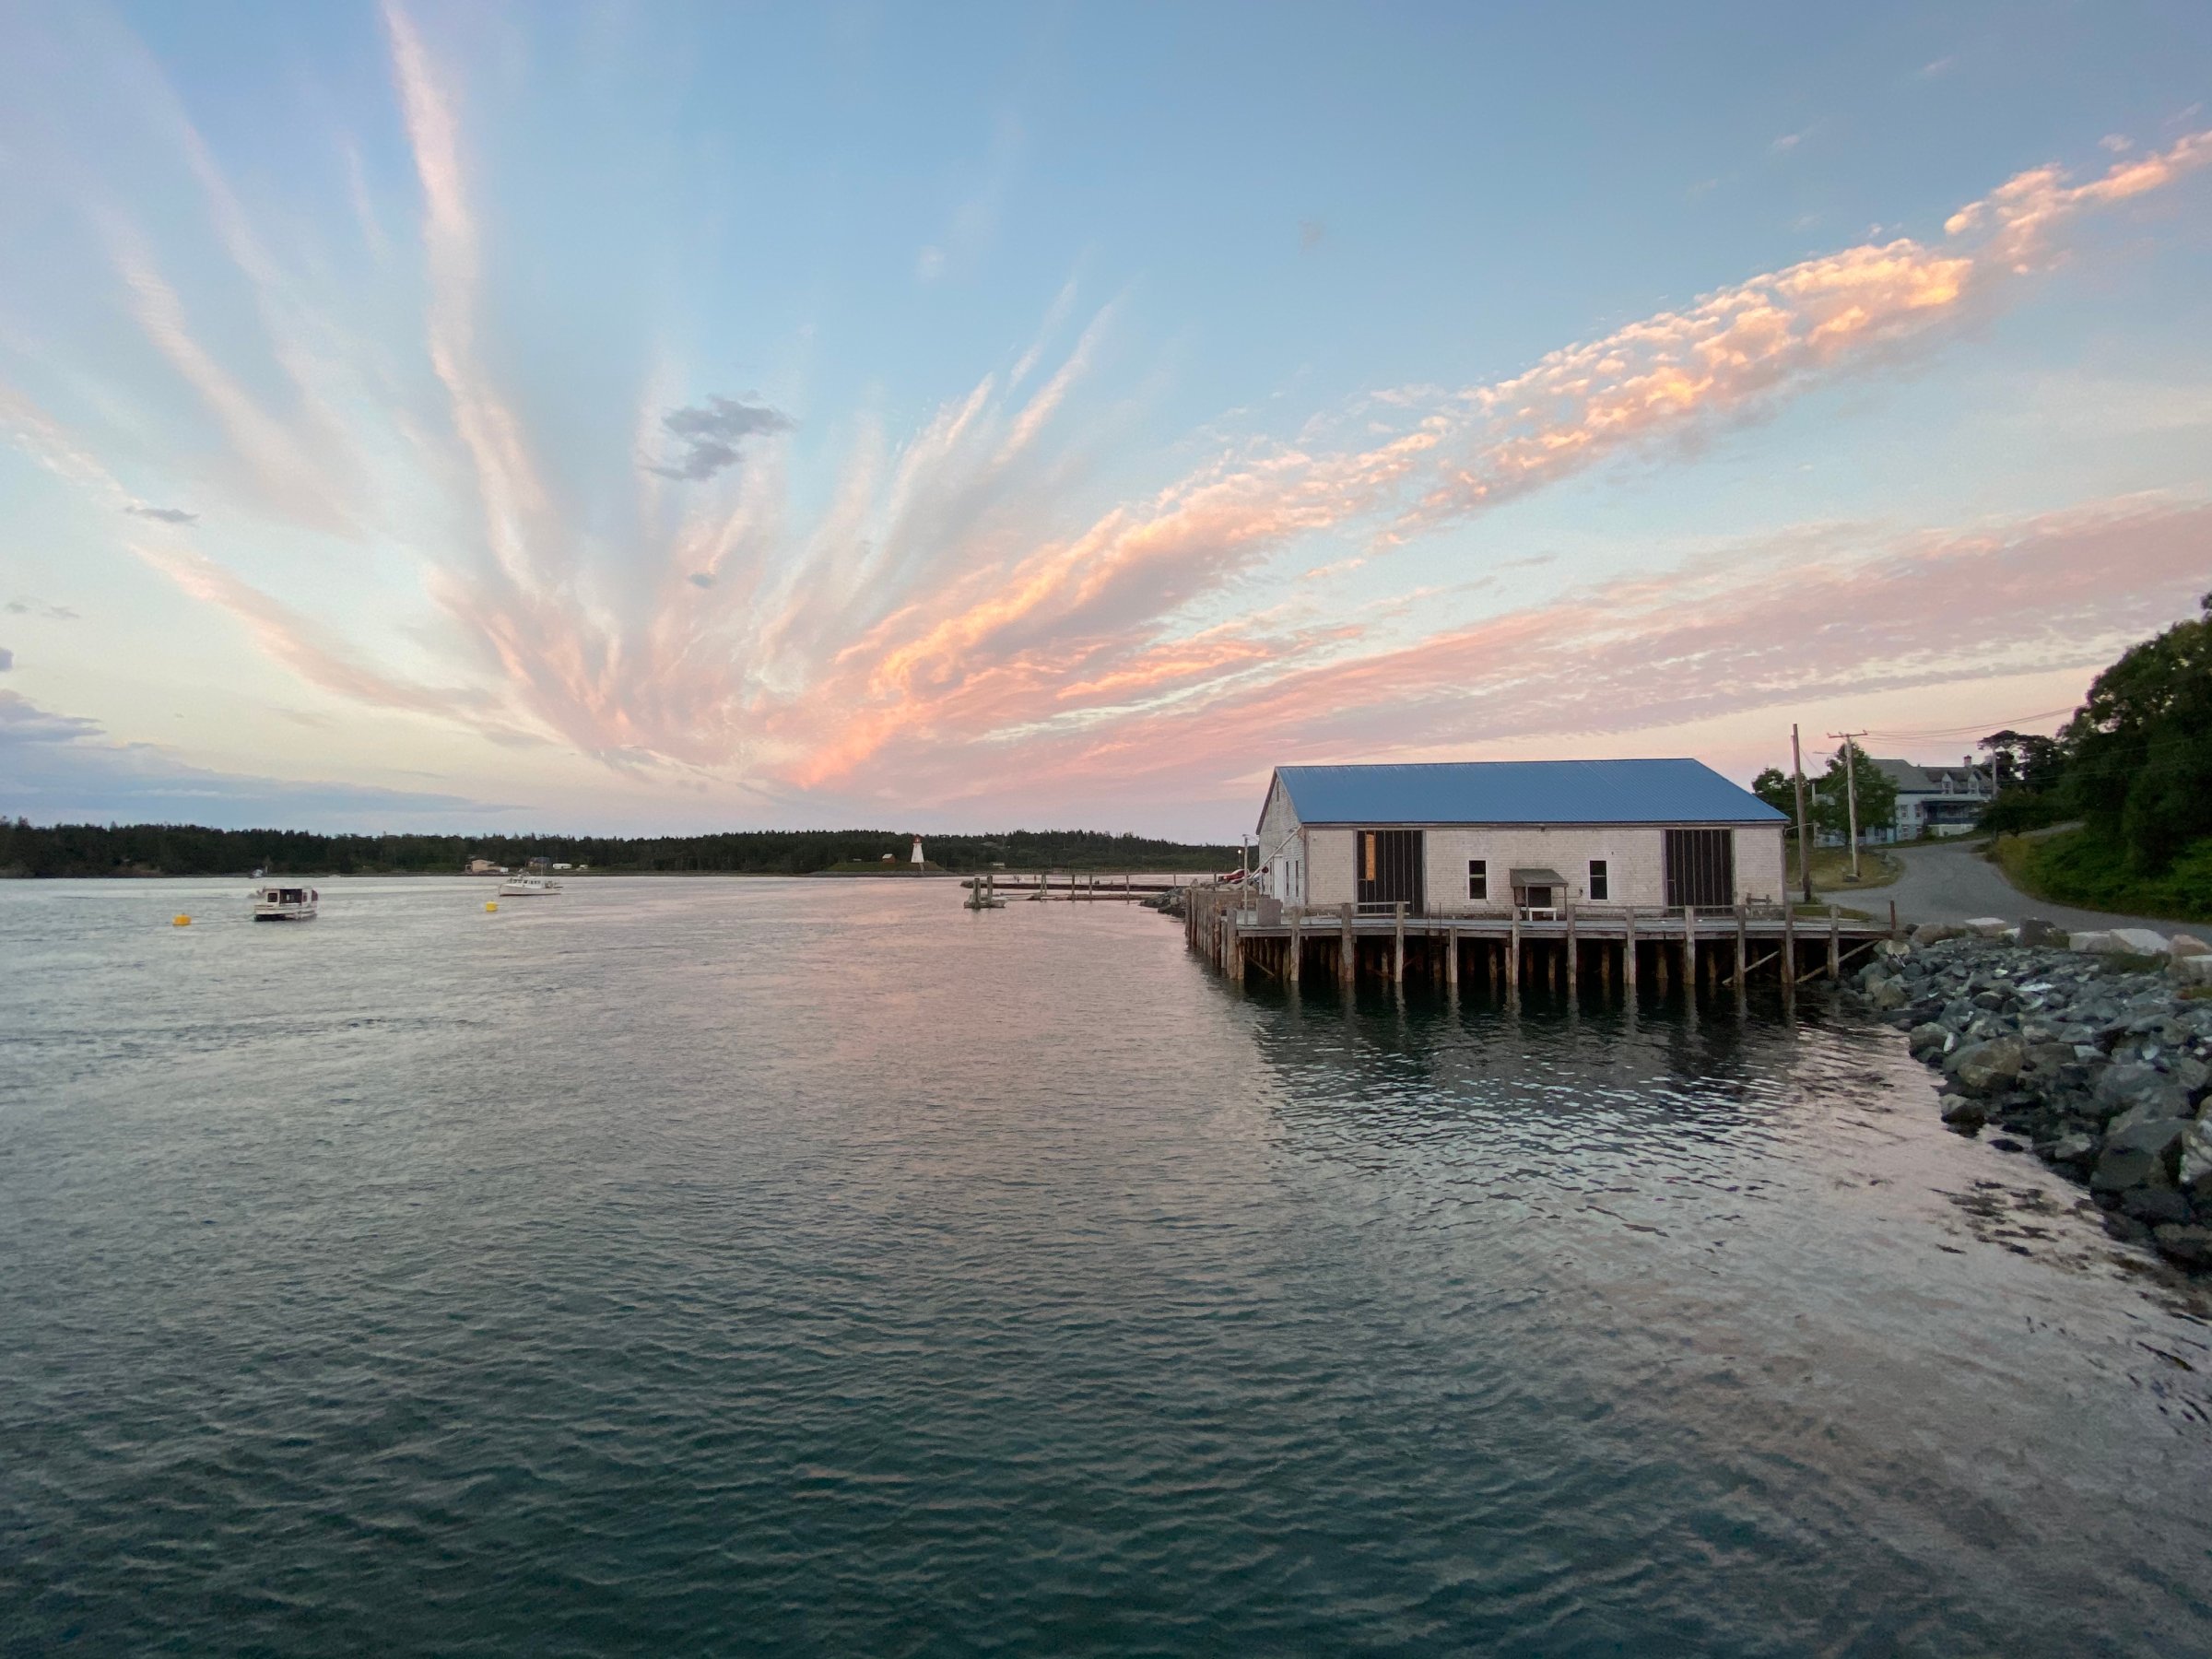 The Harbor of Lubec, Maine